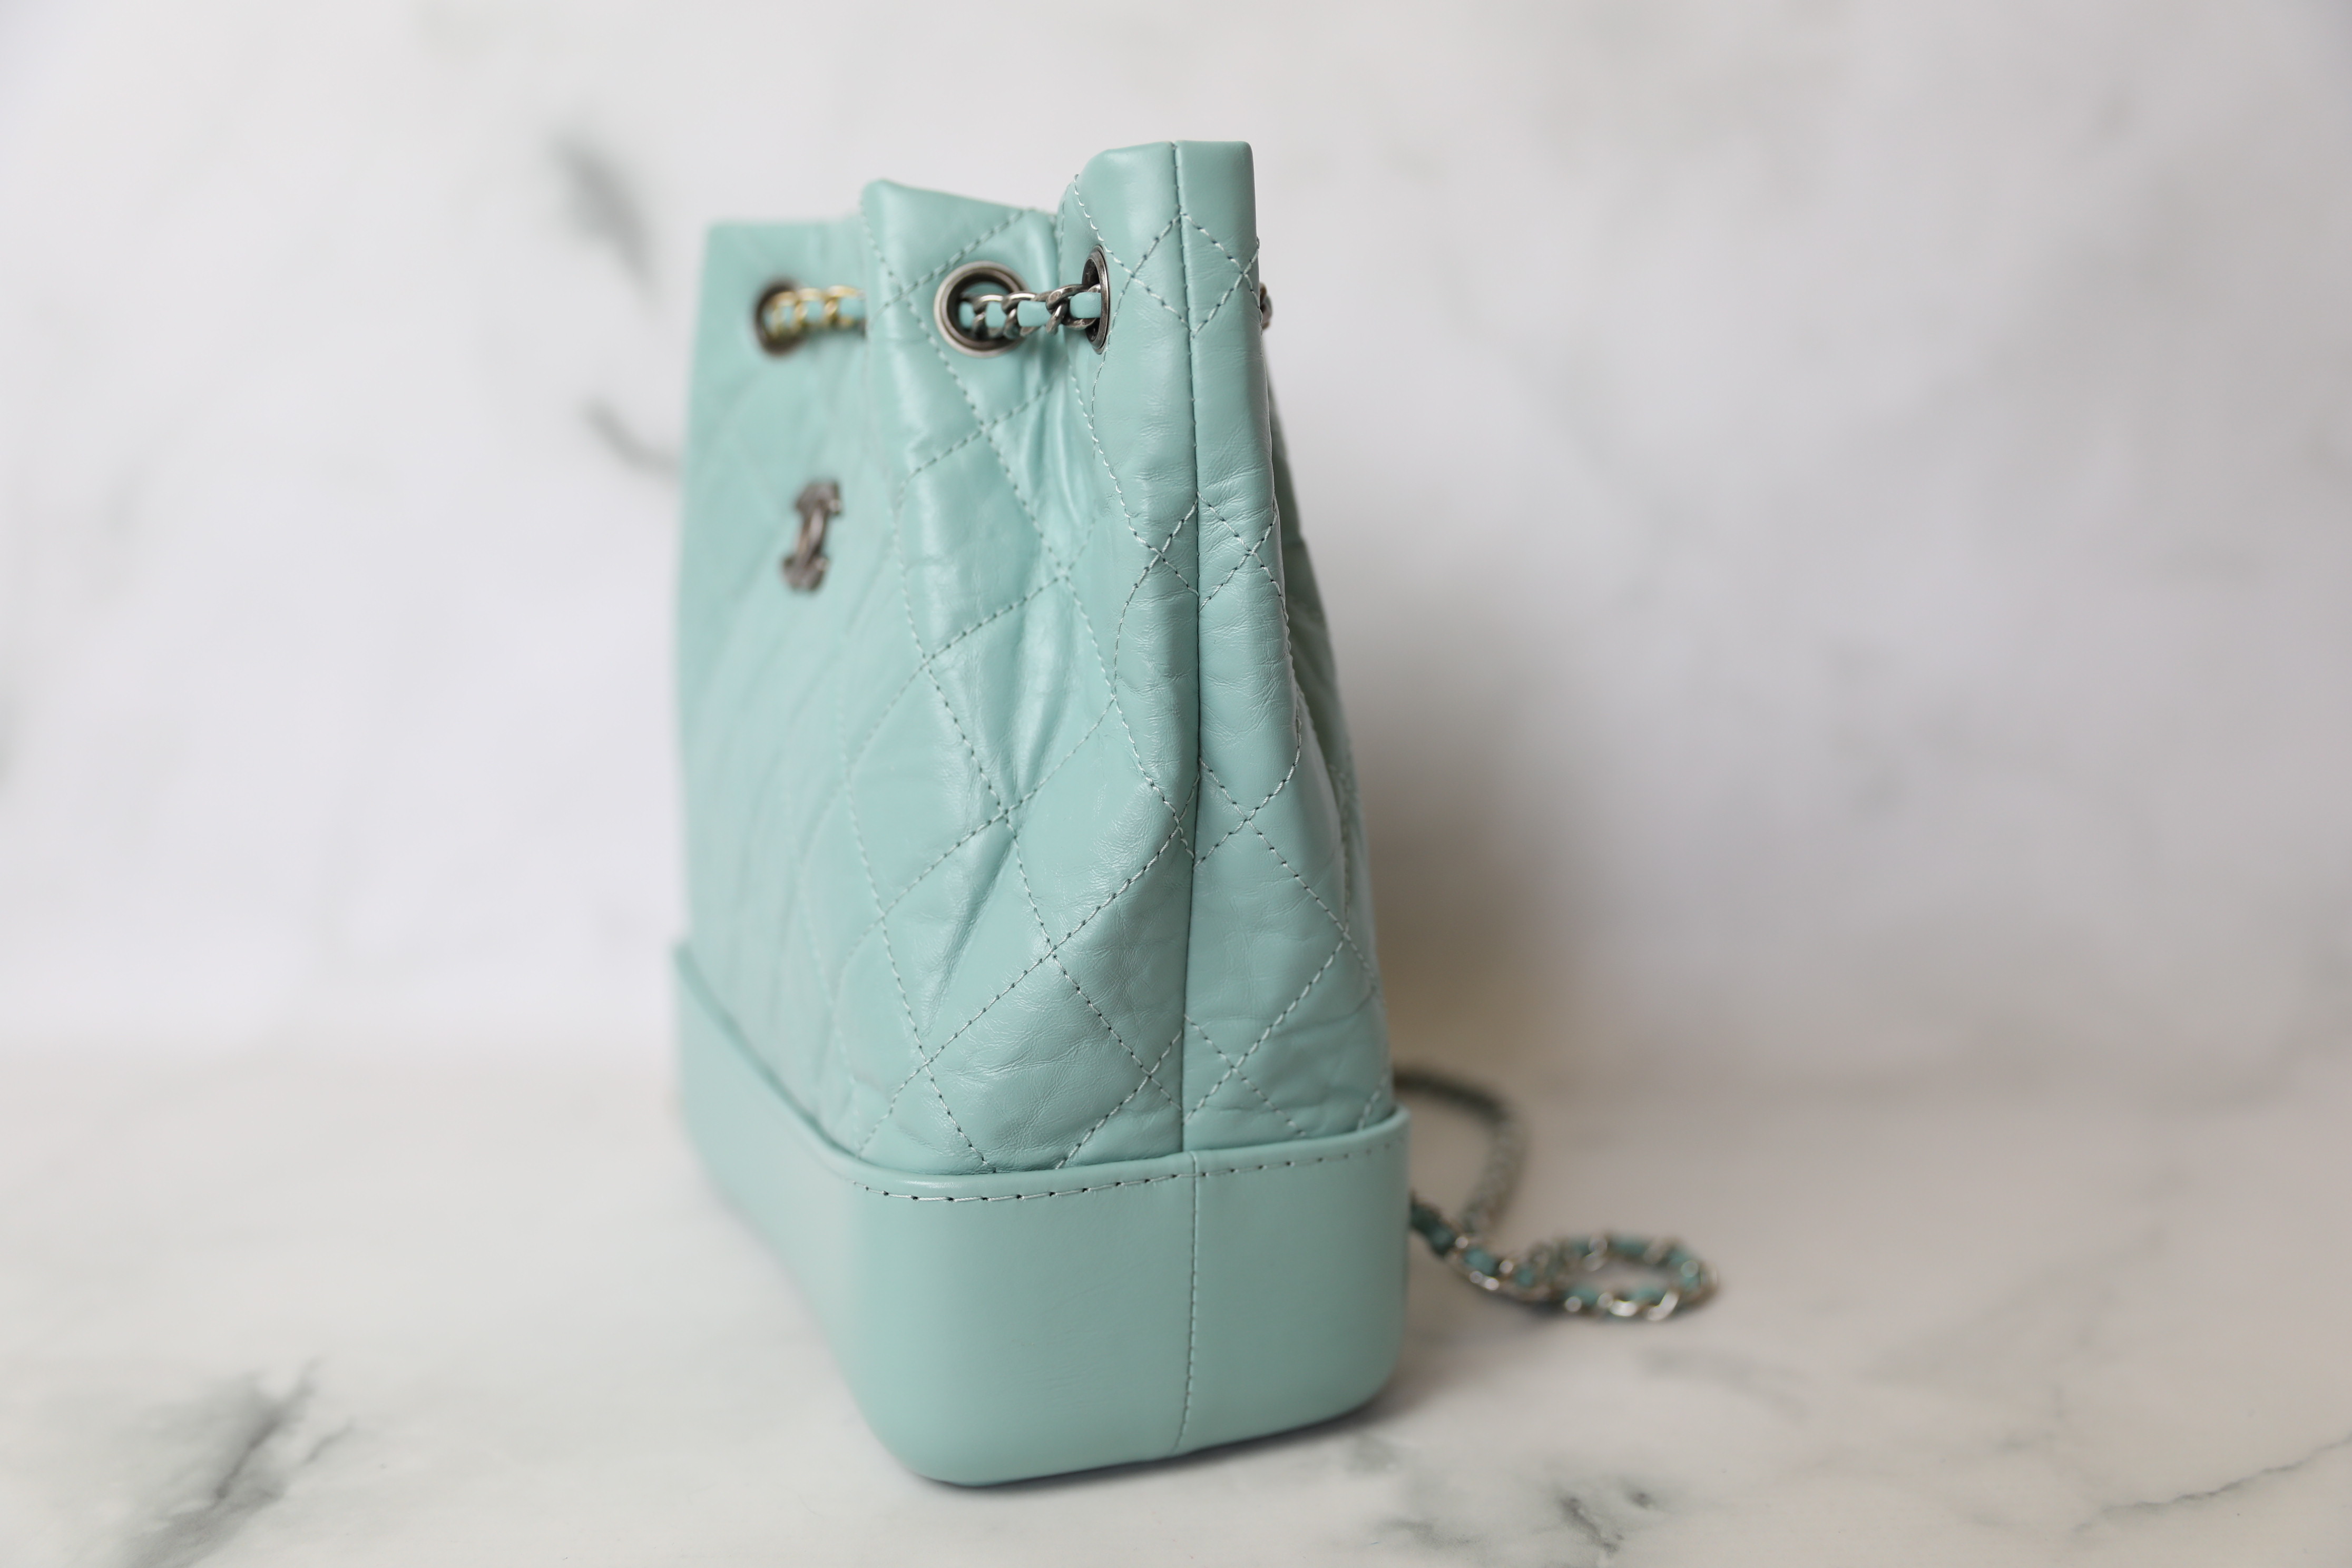 Chanel Gabrielle Bag – Beccas Bags